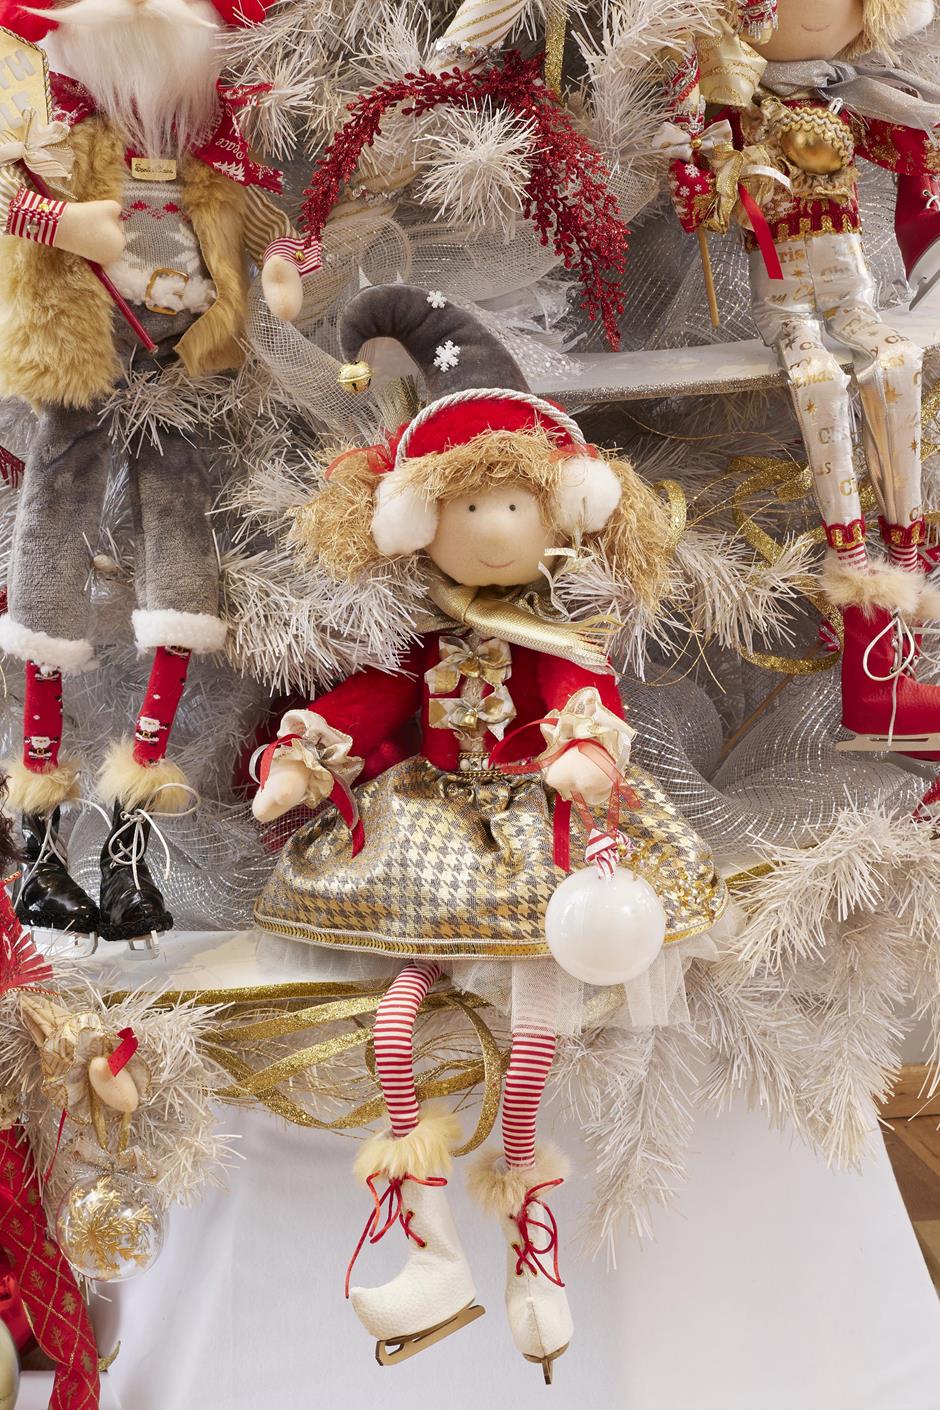 muñeca duende duenda patinador de hielo, patines de hielo, ice skater, falda, chaqueta, peluche, esfera, navidad, xmas handmade hecho a mano, rojo, blanco, dorado, plata, queca designs